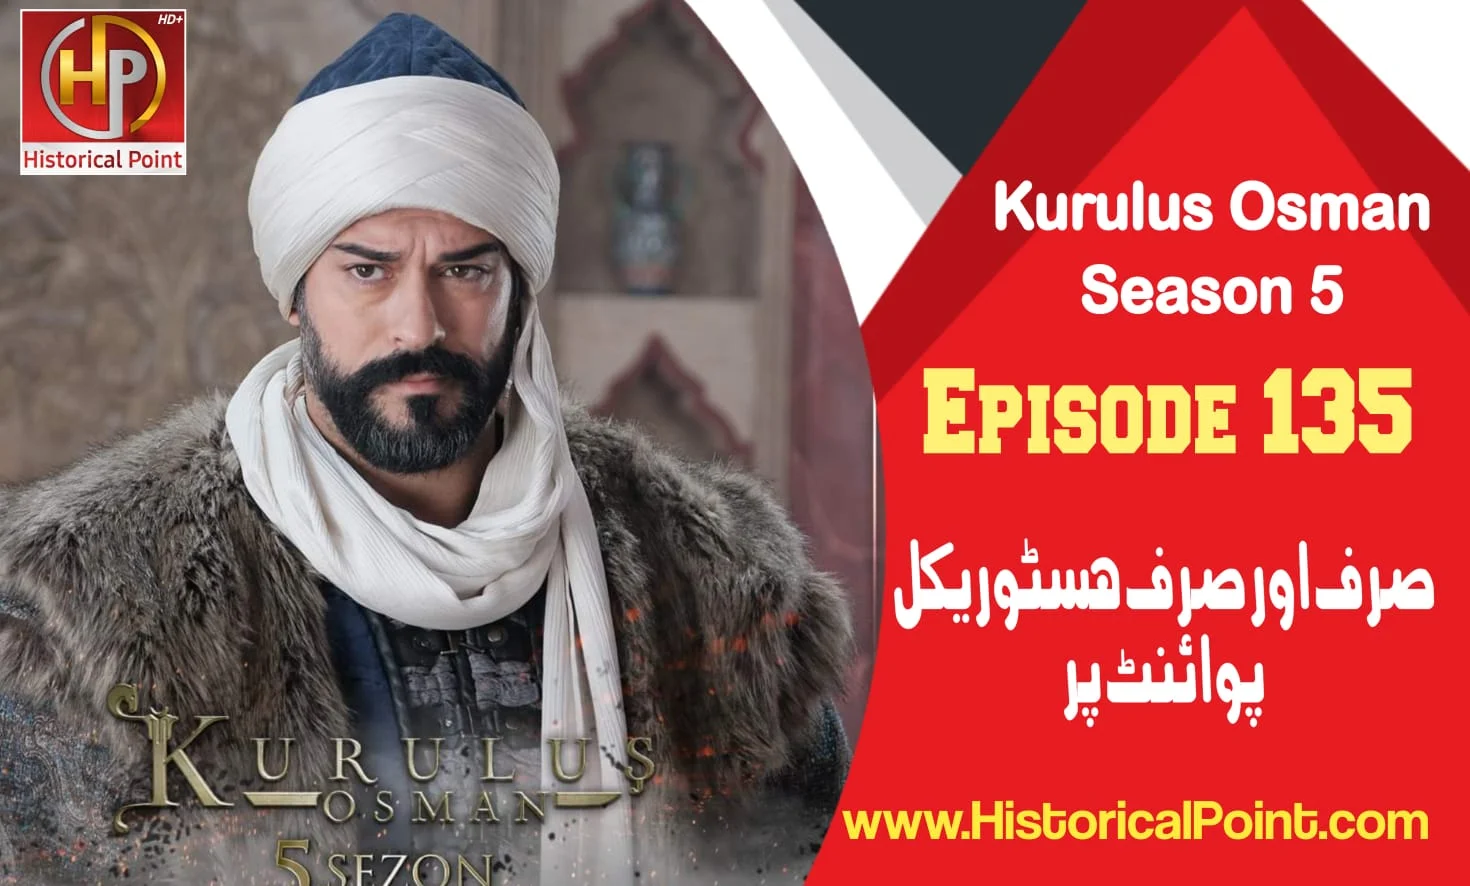 Kurulus Osman Episode 135 in Urdu